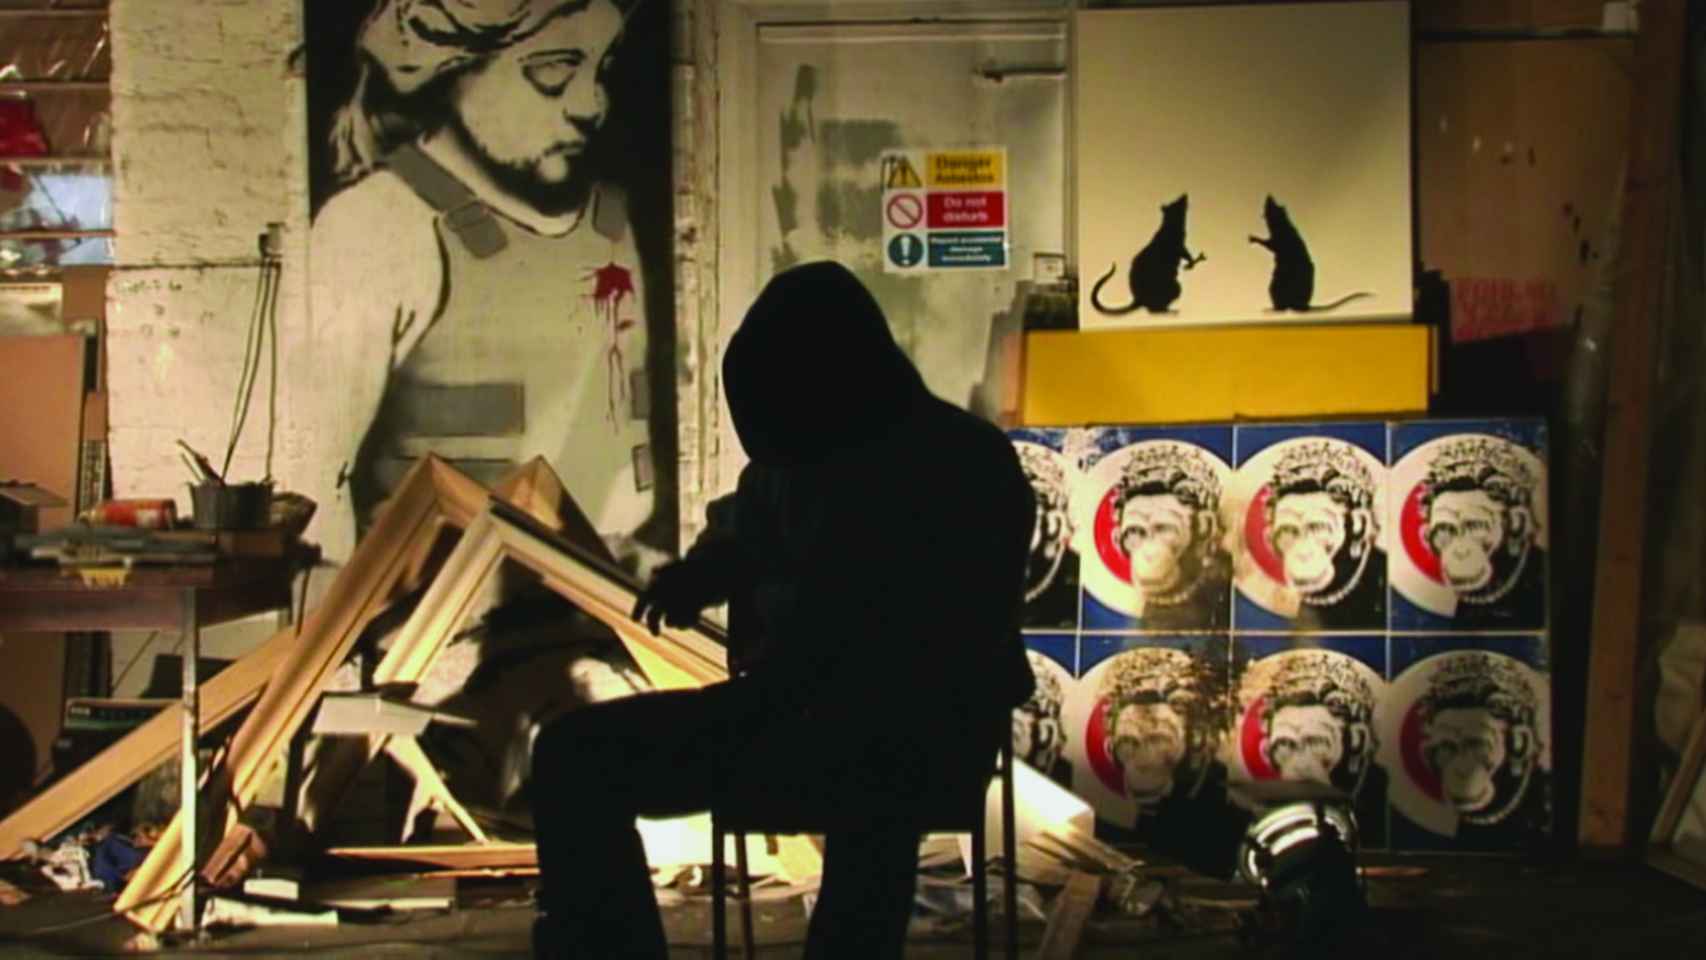 Banksy encapuchado en un fotograma de Exit through the gift shop